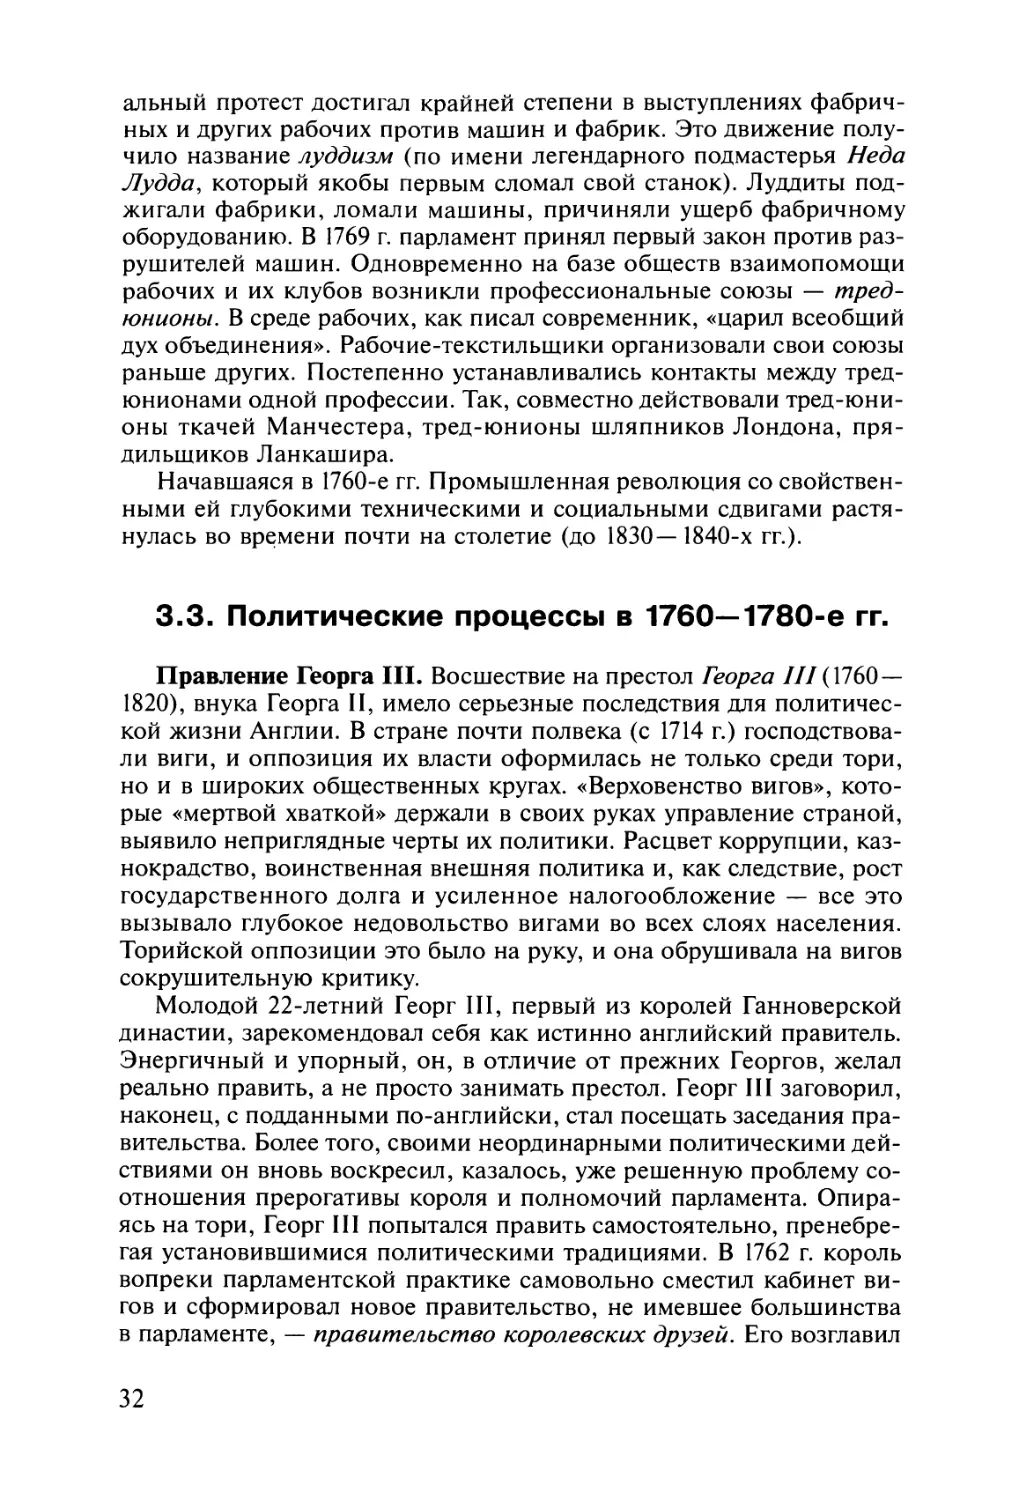 3.3. Политические процессы в 1760—1780-е гг.